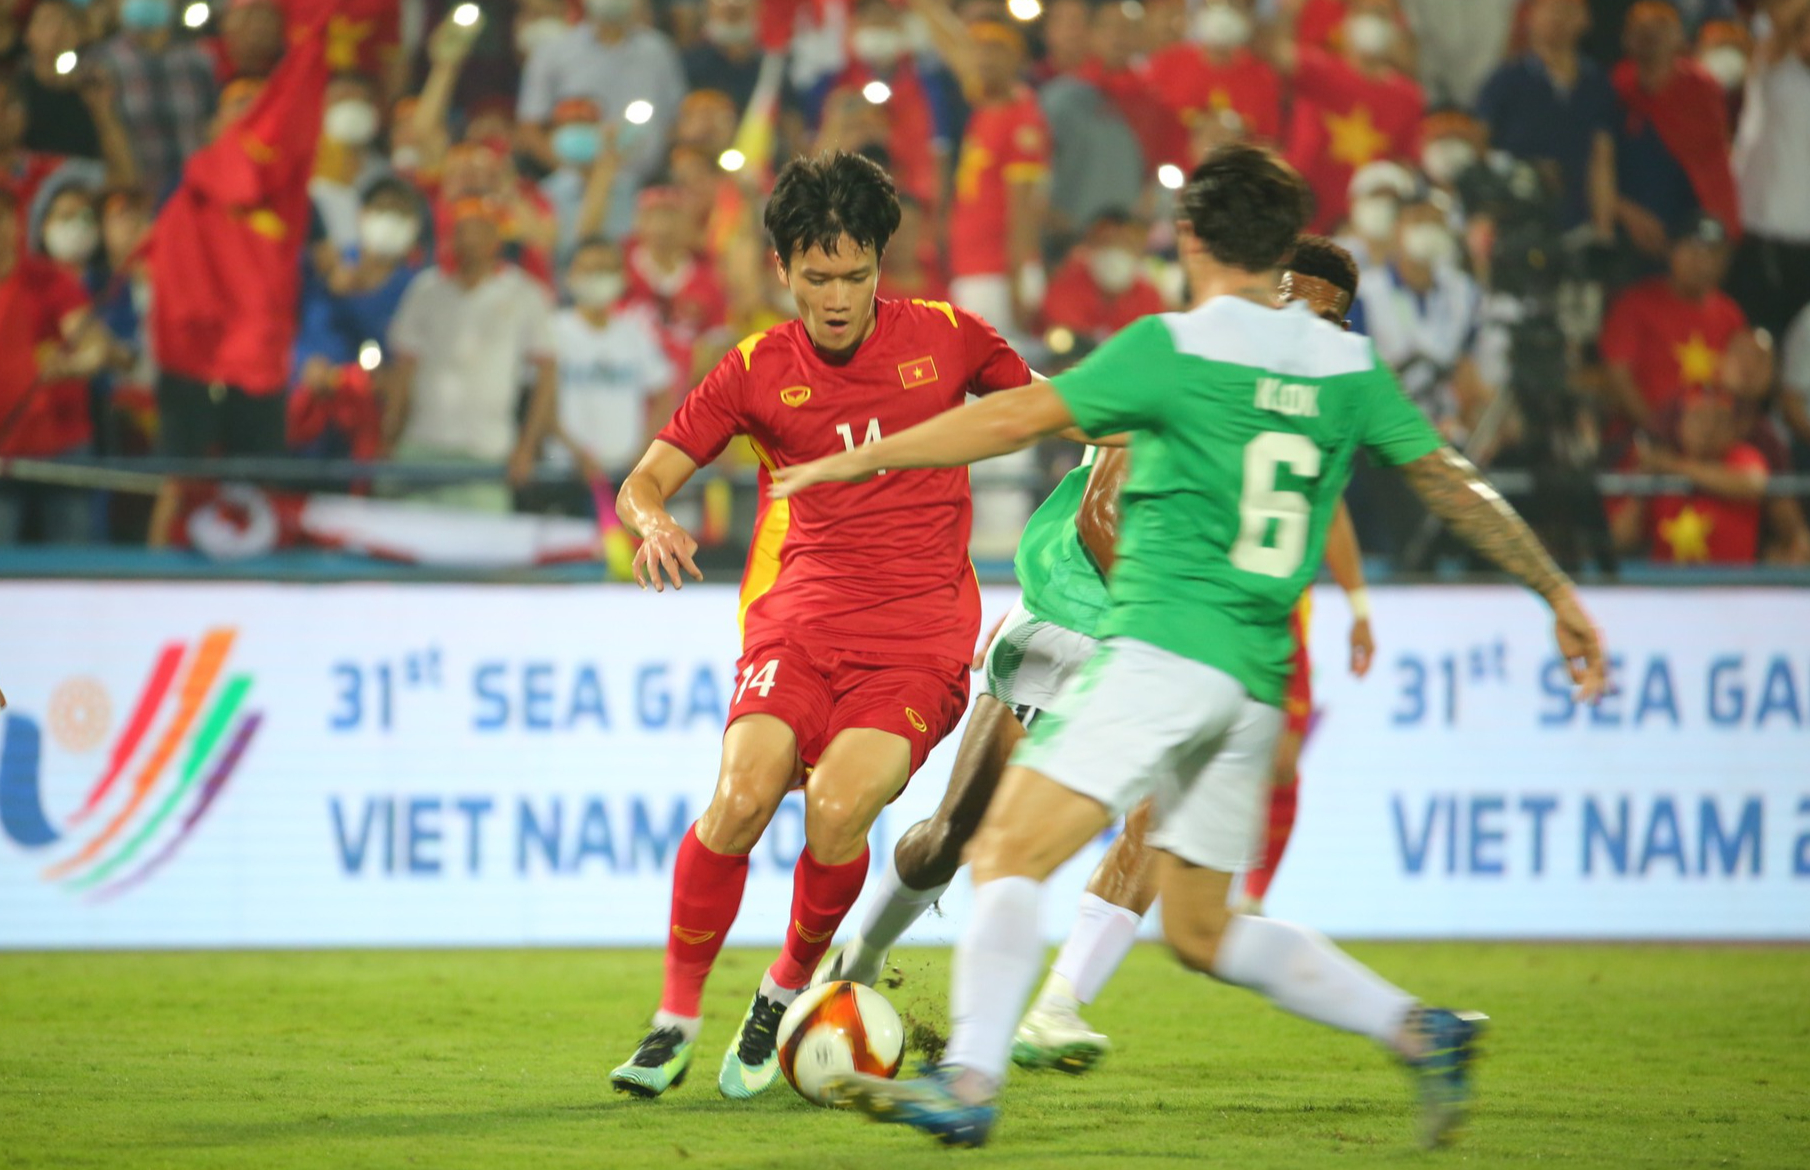 Soi kèo bảng A: Indonesia và U23 Myanmar tranh ngôi nhì bảng sau Việt Nam - Ảnh 1.